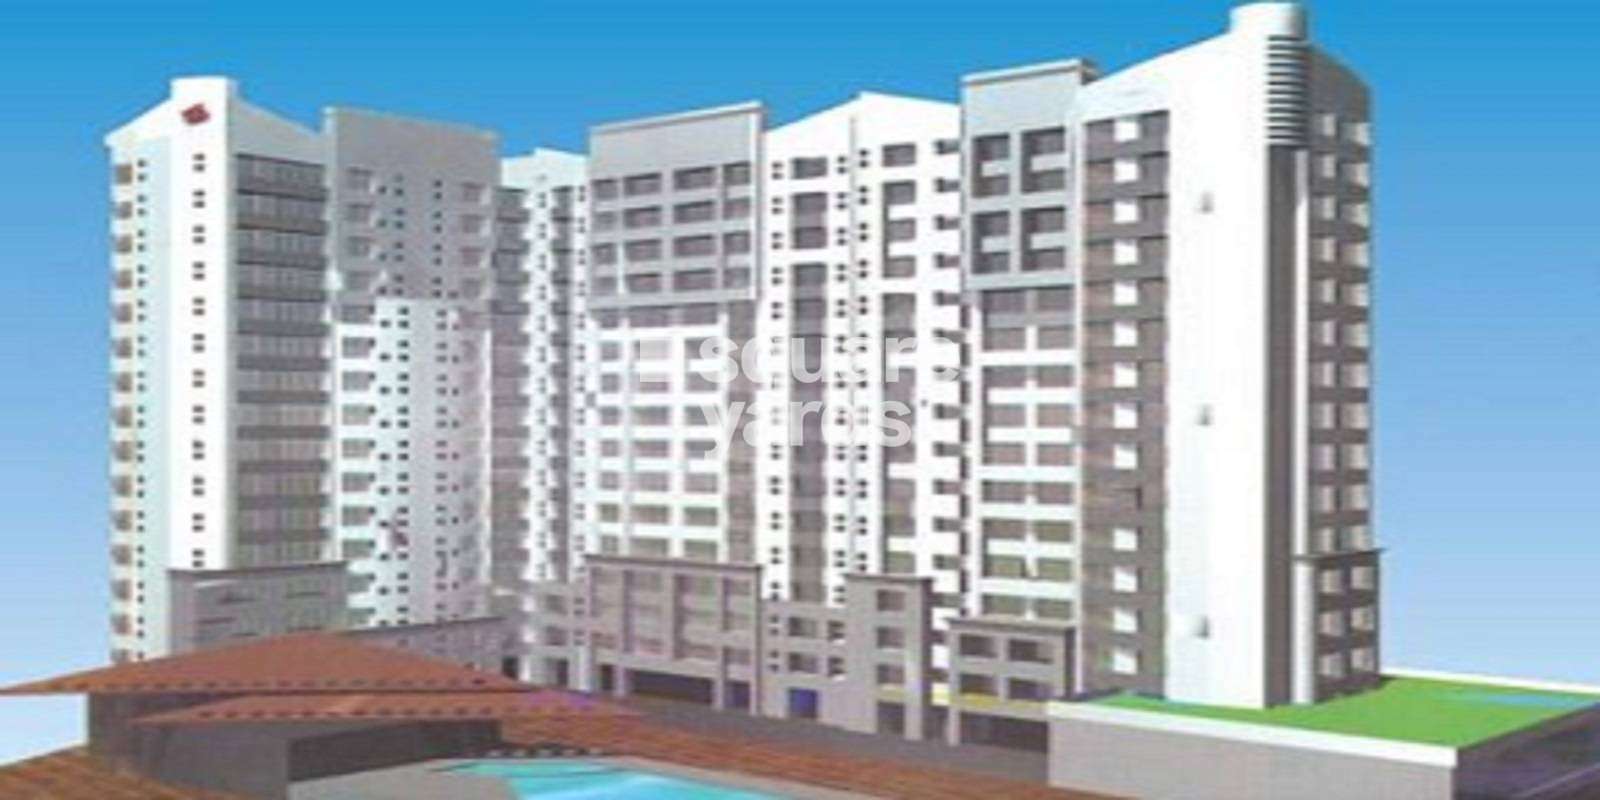 Laxmi Tridev Apartments Cover Image